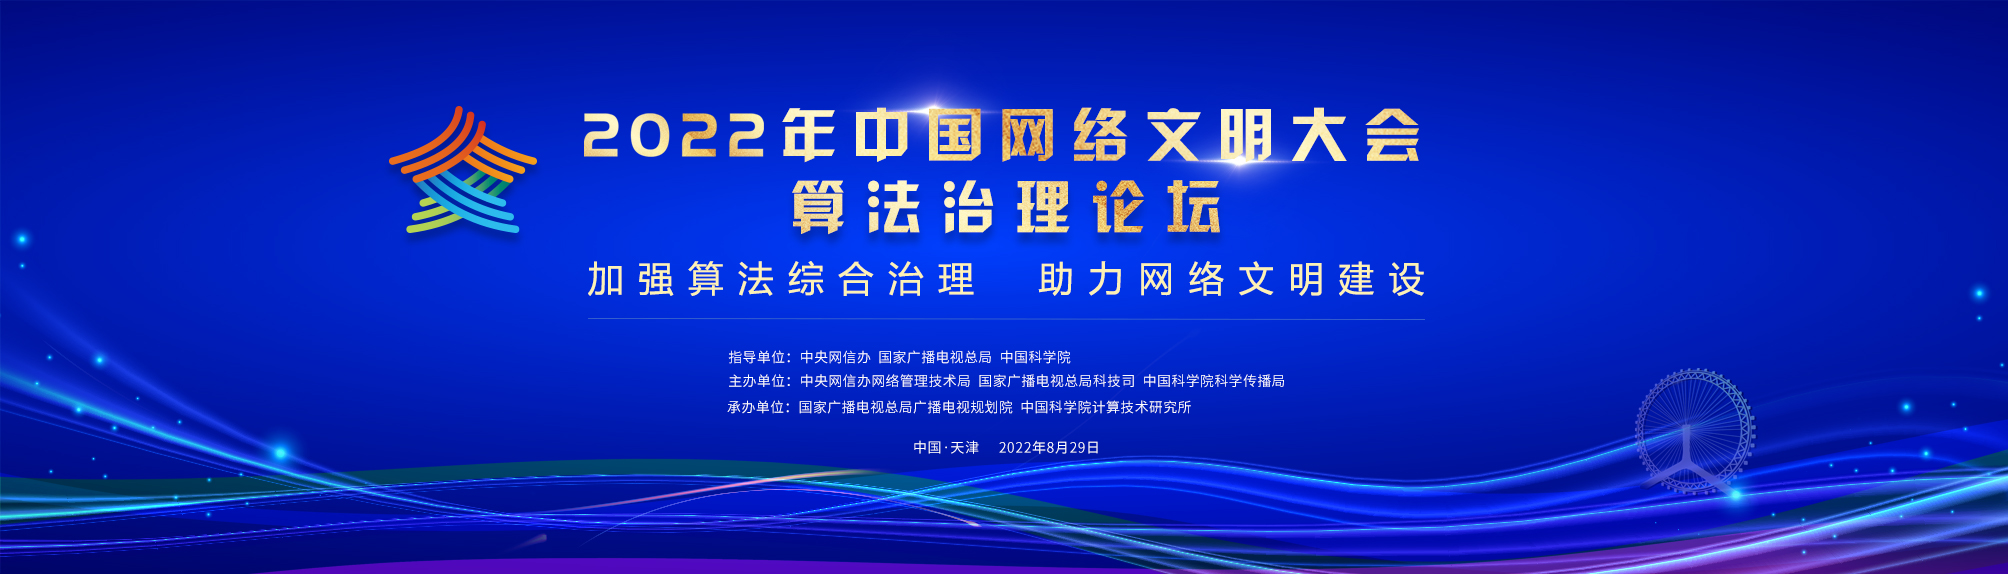 2022年中国网络文明大会·算法治理论坛